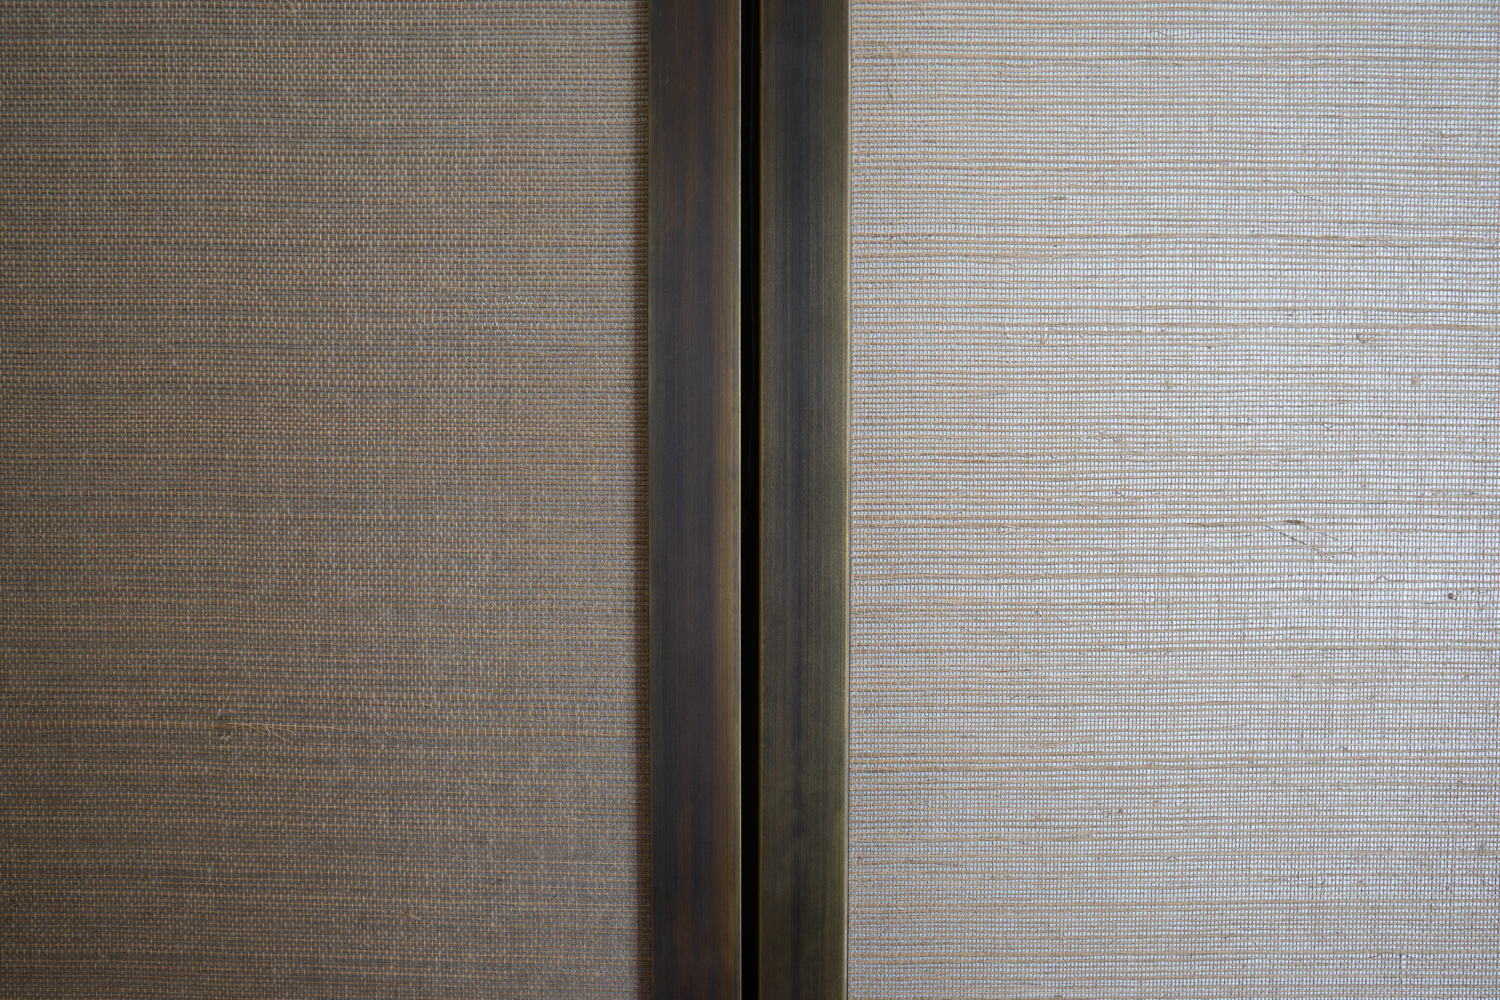 Wardrobe Doors, Hand patinated antique Brass, Philip Jeffries Linen Wallpaper 
